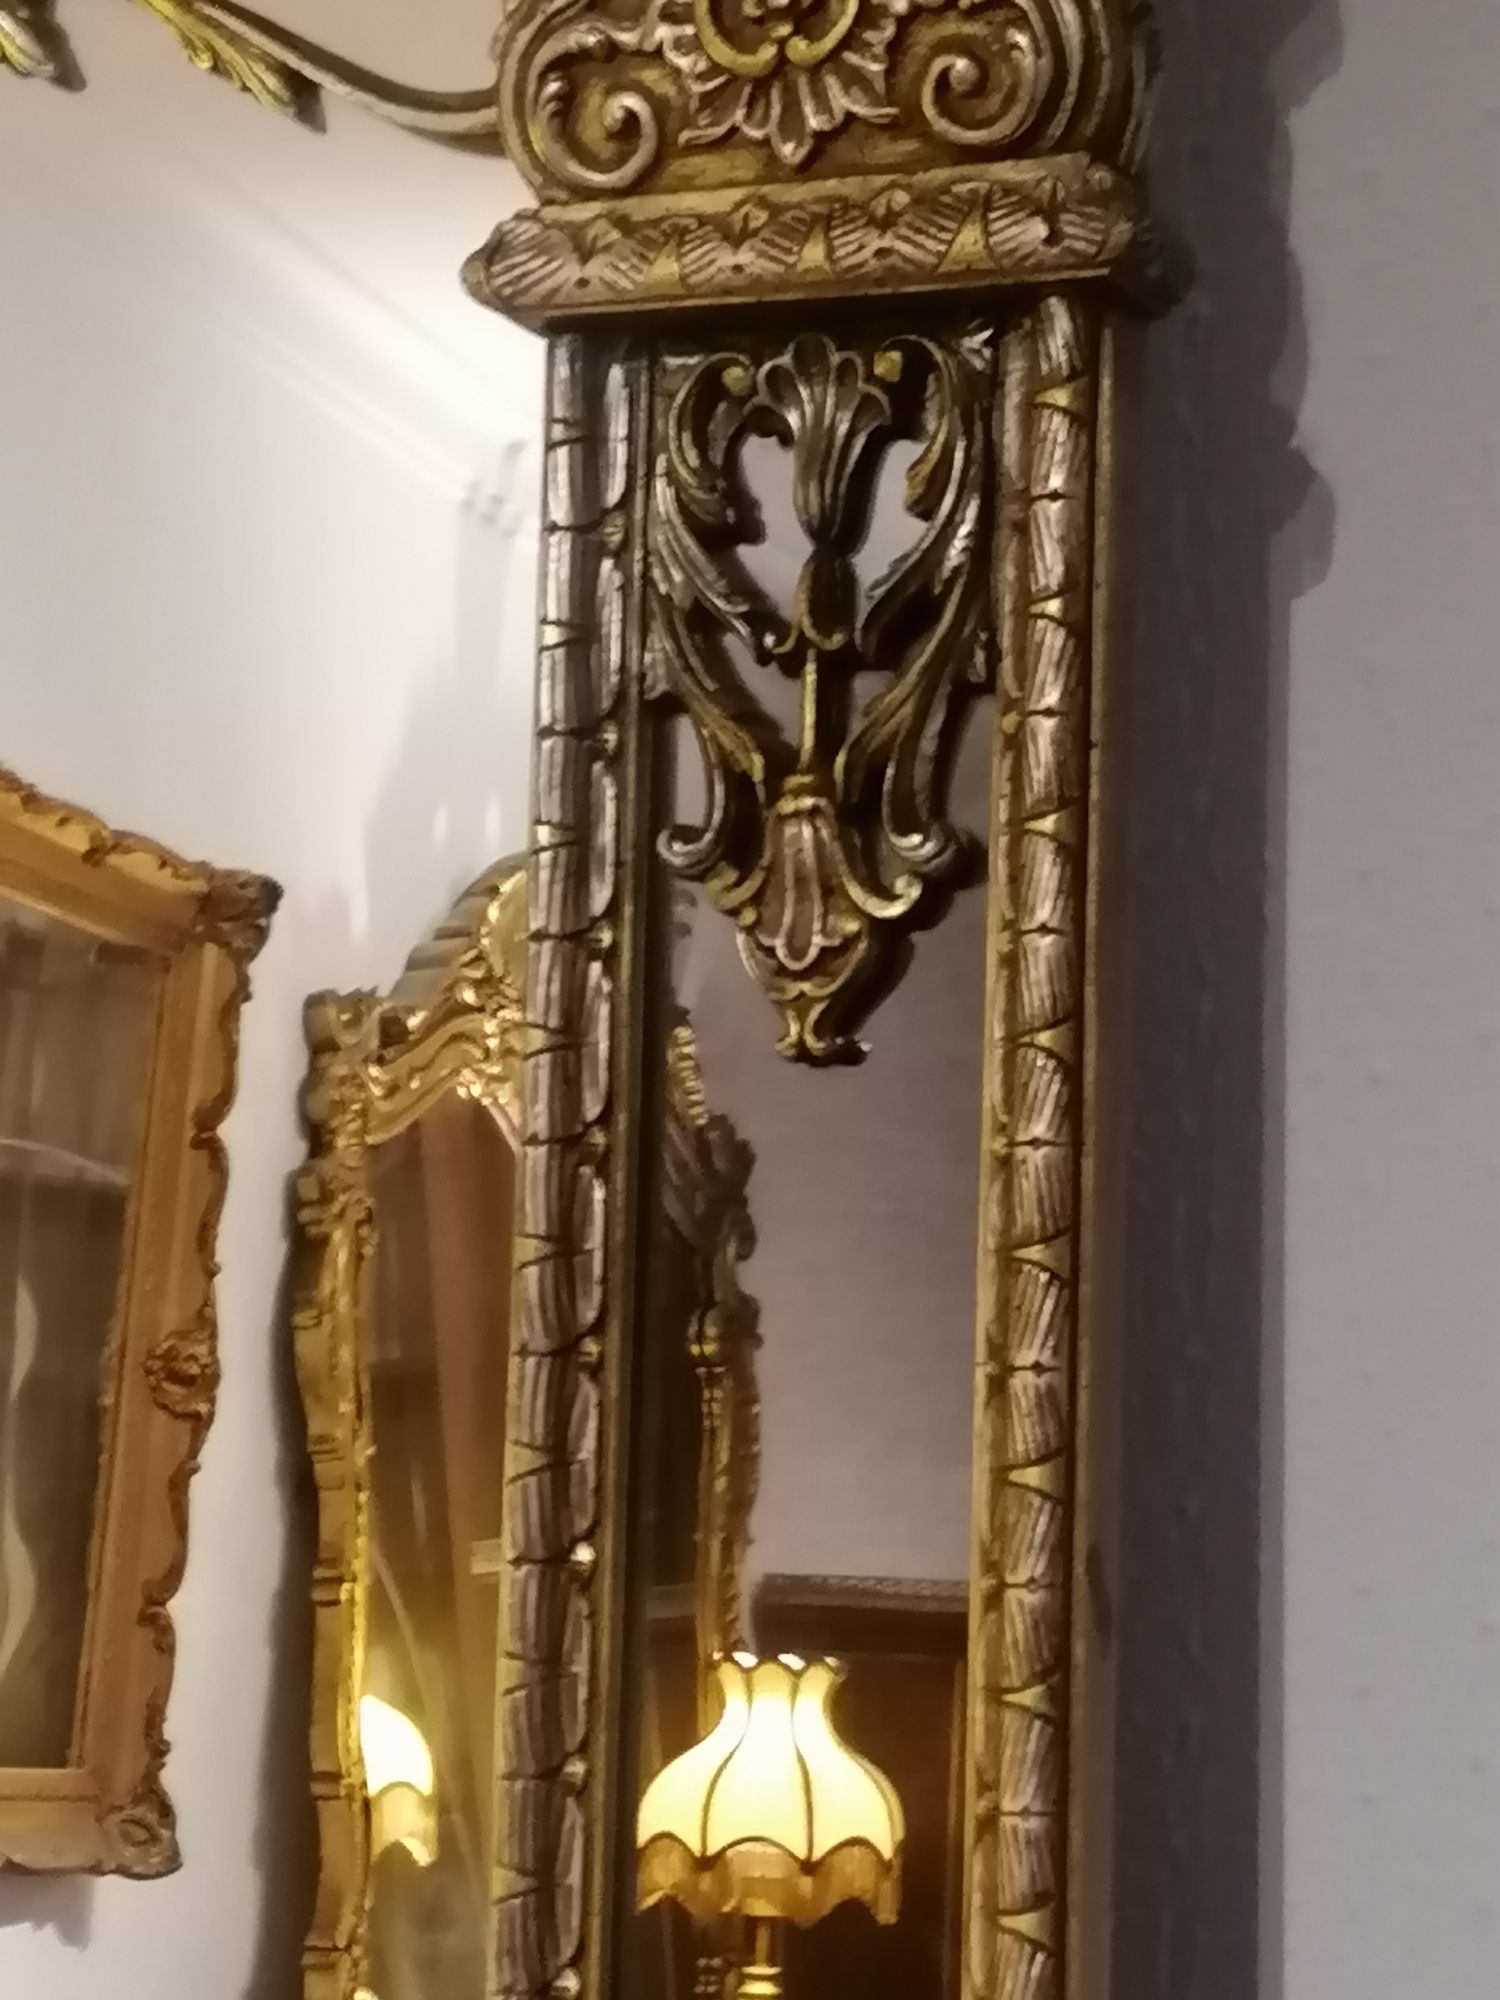 Antigo grande Espelho de corpo inteiro/chão (ou de parede). Luís XV